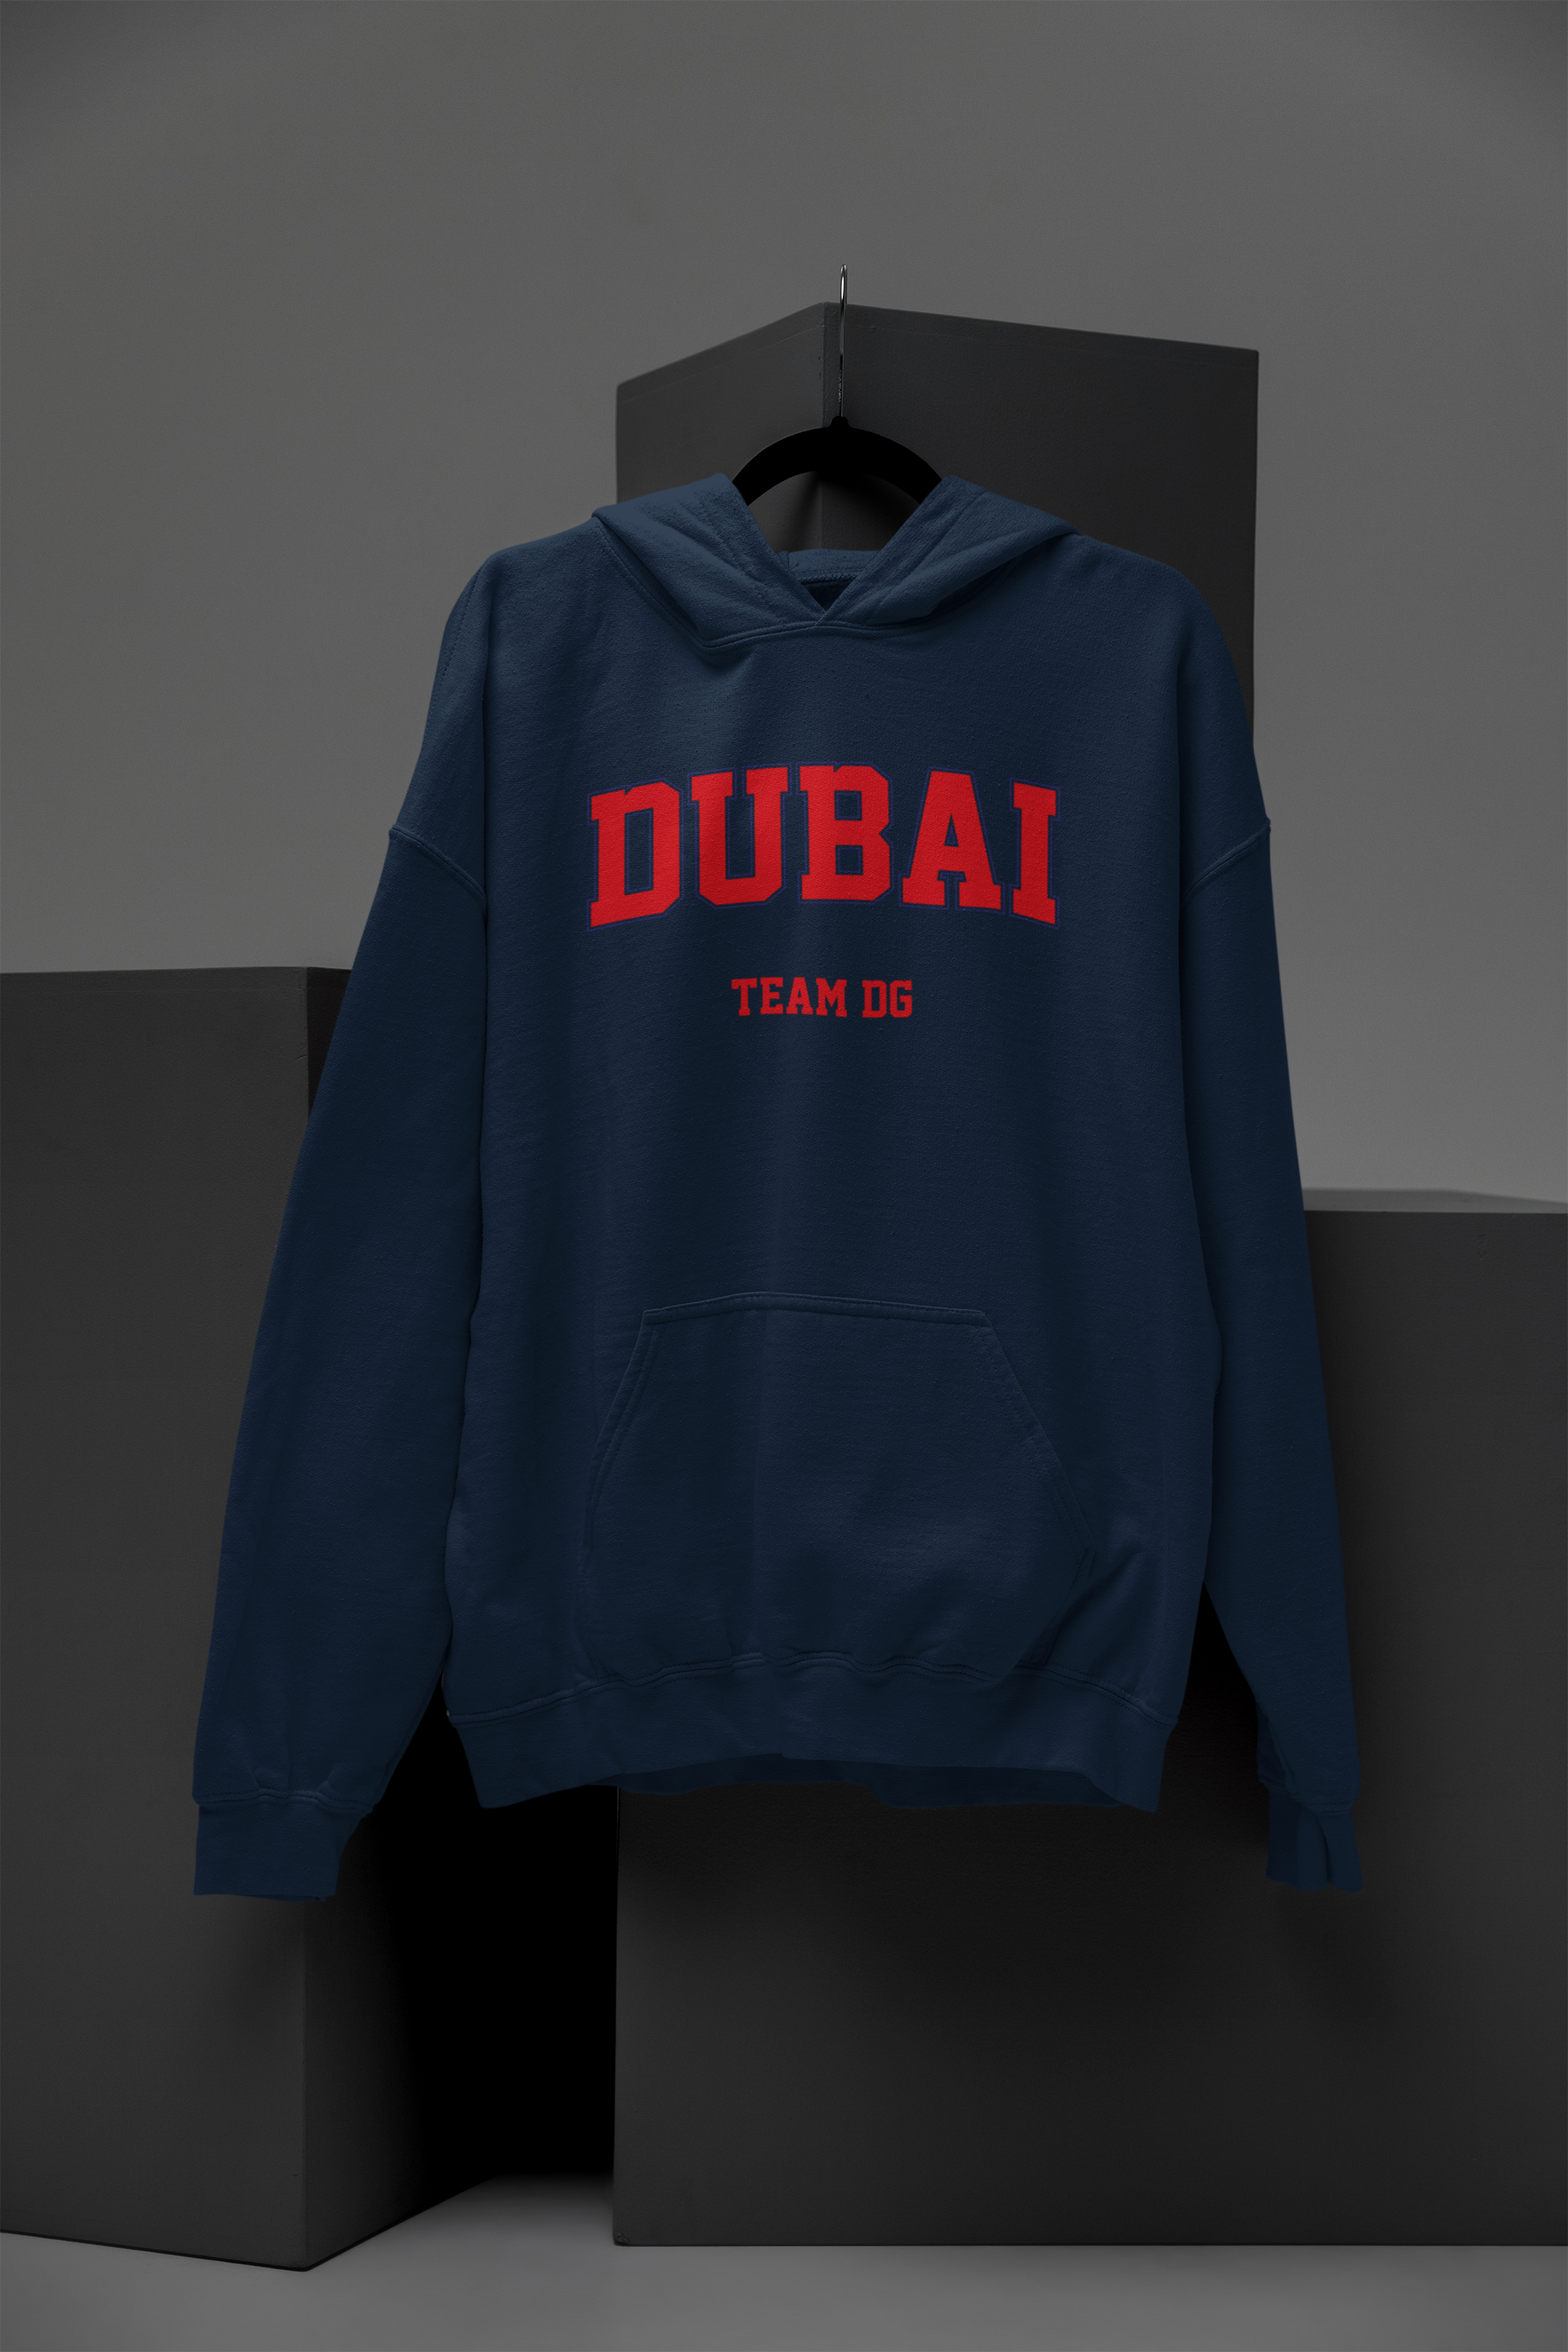 "DUBAI Team DG" - Hoodie Unisex (Blau/Rot)